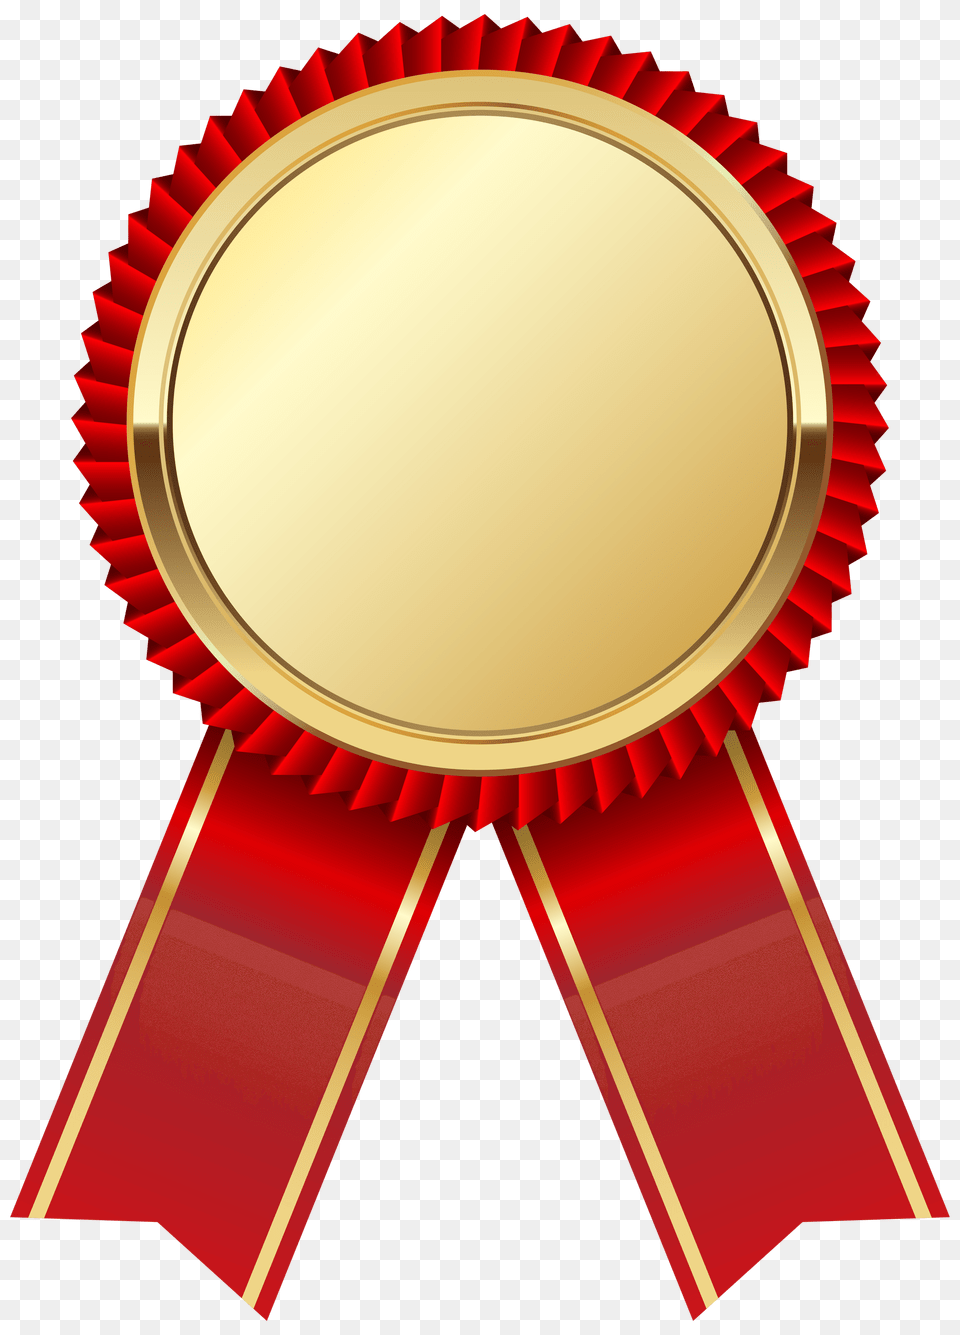 Gold Medal Ribbon, Gold Medal, Trophy, Logo Free Png Download